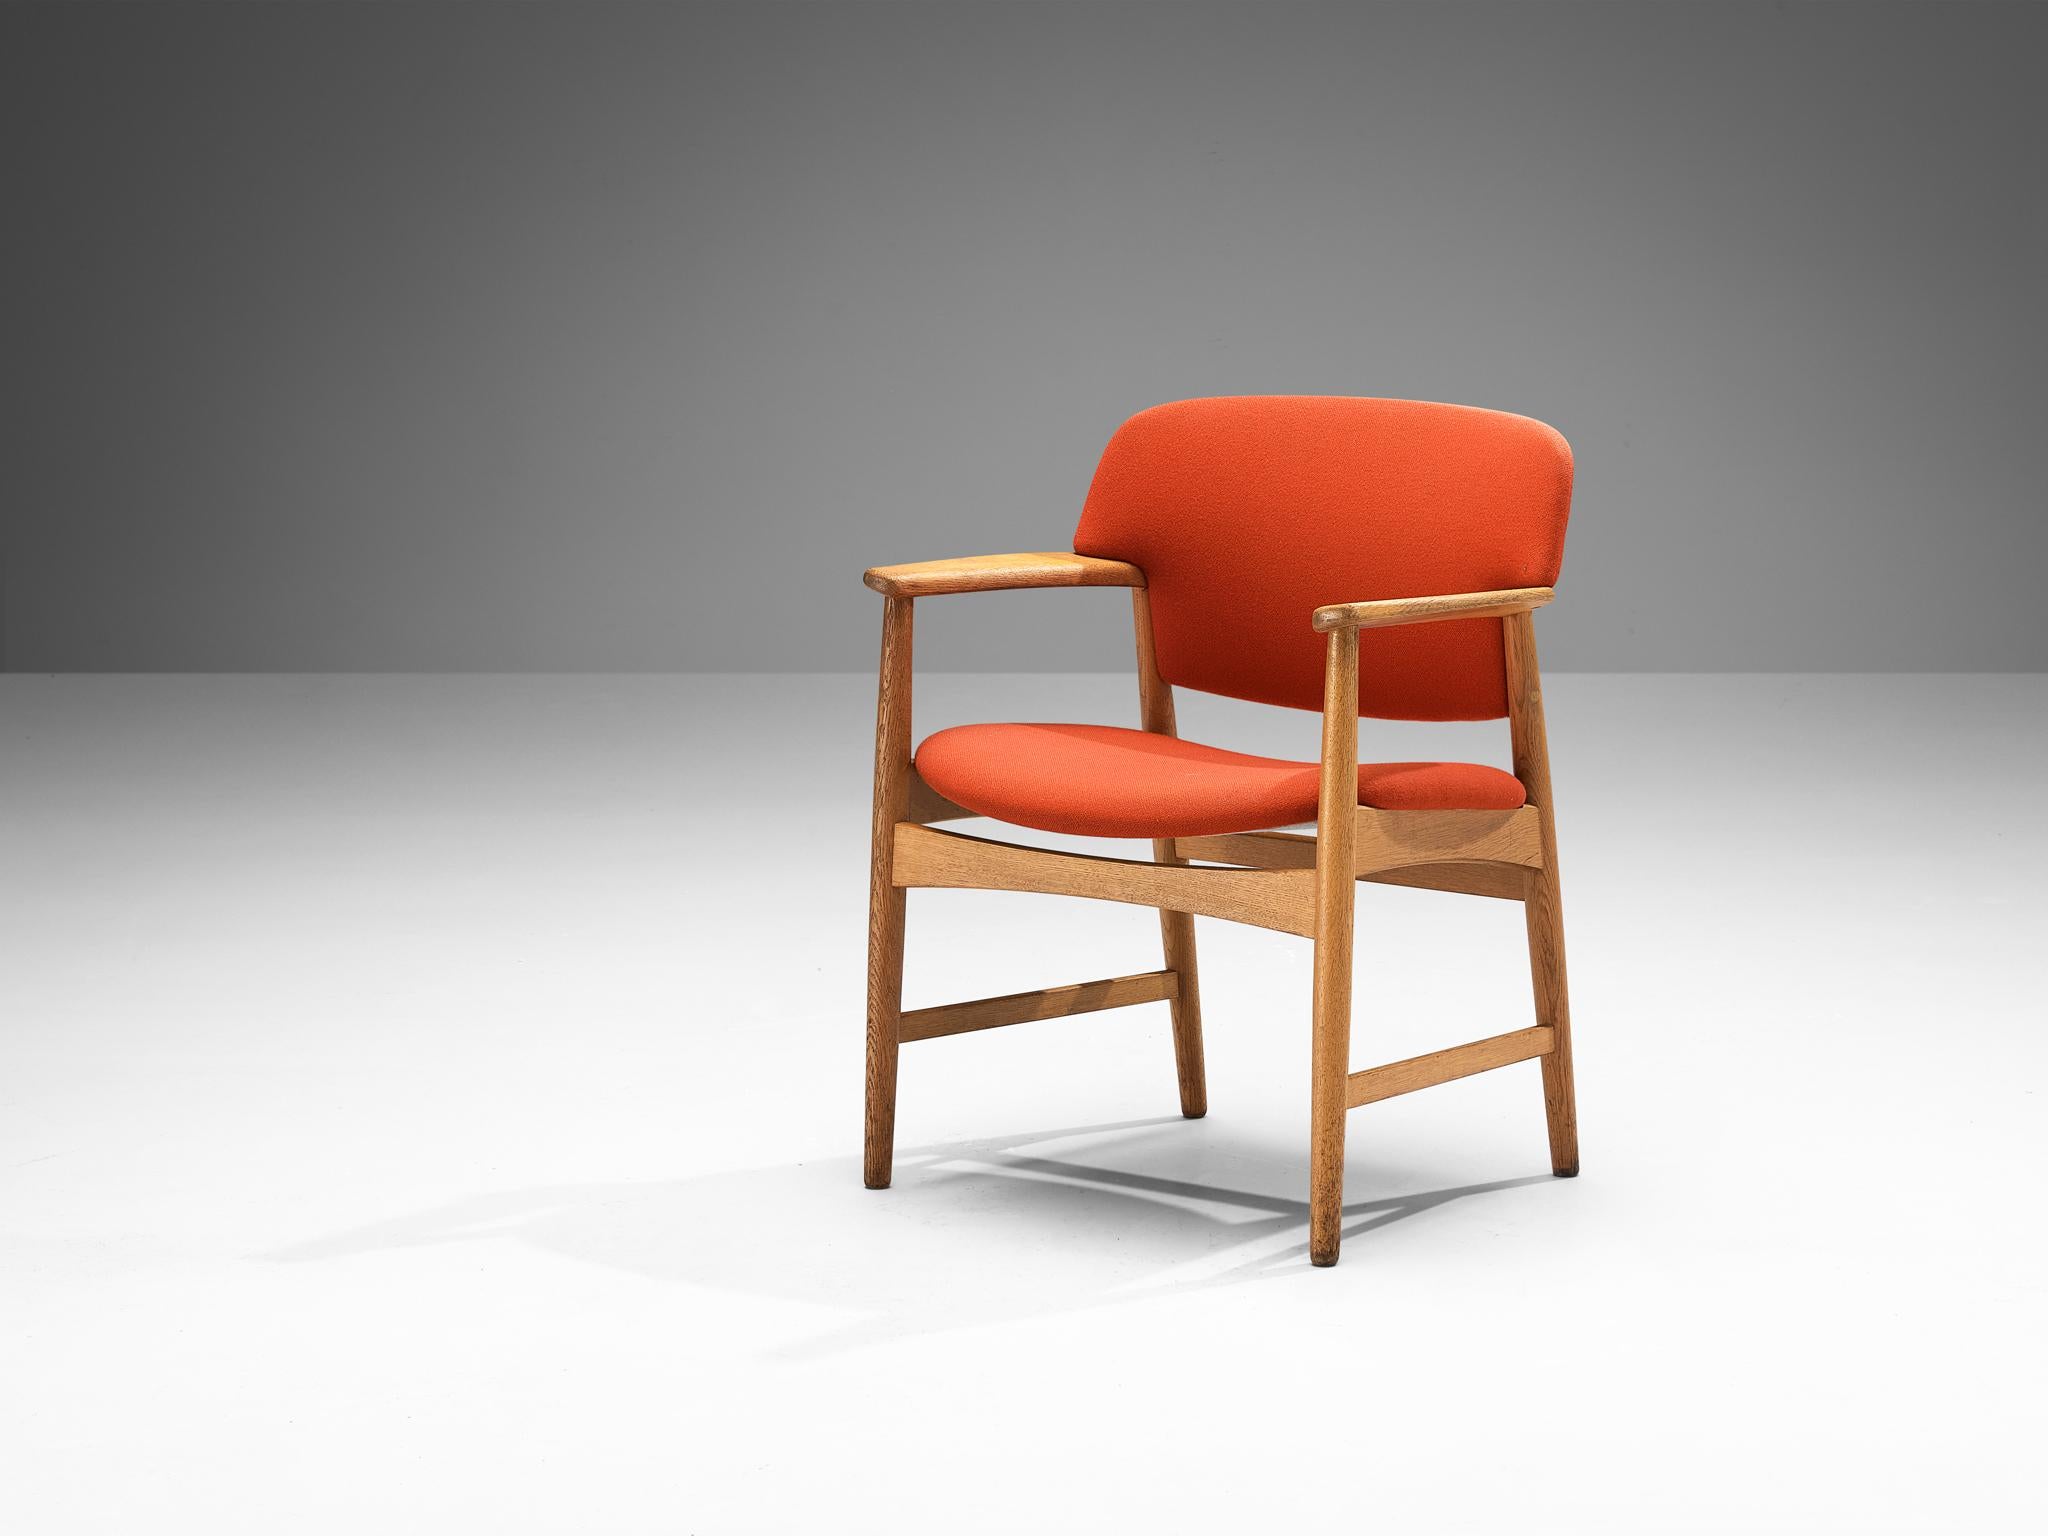 Einar Larsen & Aksel Bender-Madsen für Fritz Hansen, Modell 4205, orange gepolstert, Eiche, Dänemark, 1950er Jahre

Dieser breite Esszimmerstuhl ist mit einer abgerundeten Rückenlehne ausgestattet. Der Stuhl hat einen Rahmen aus blonder Eiche und